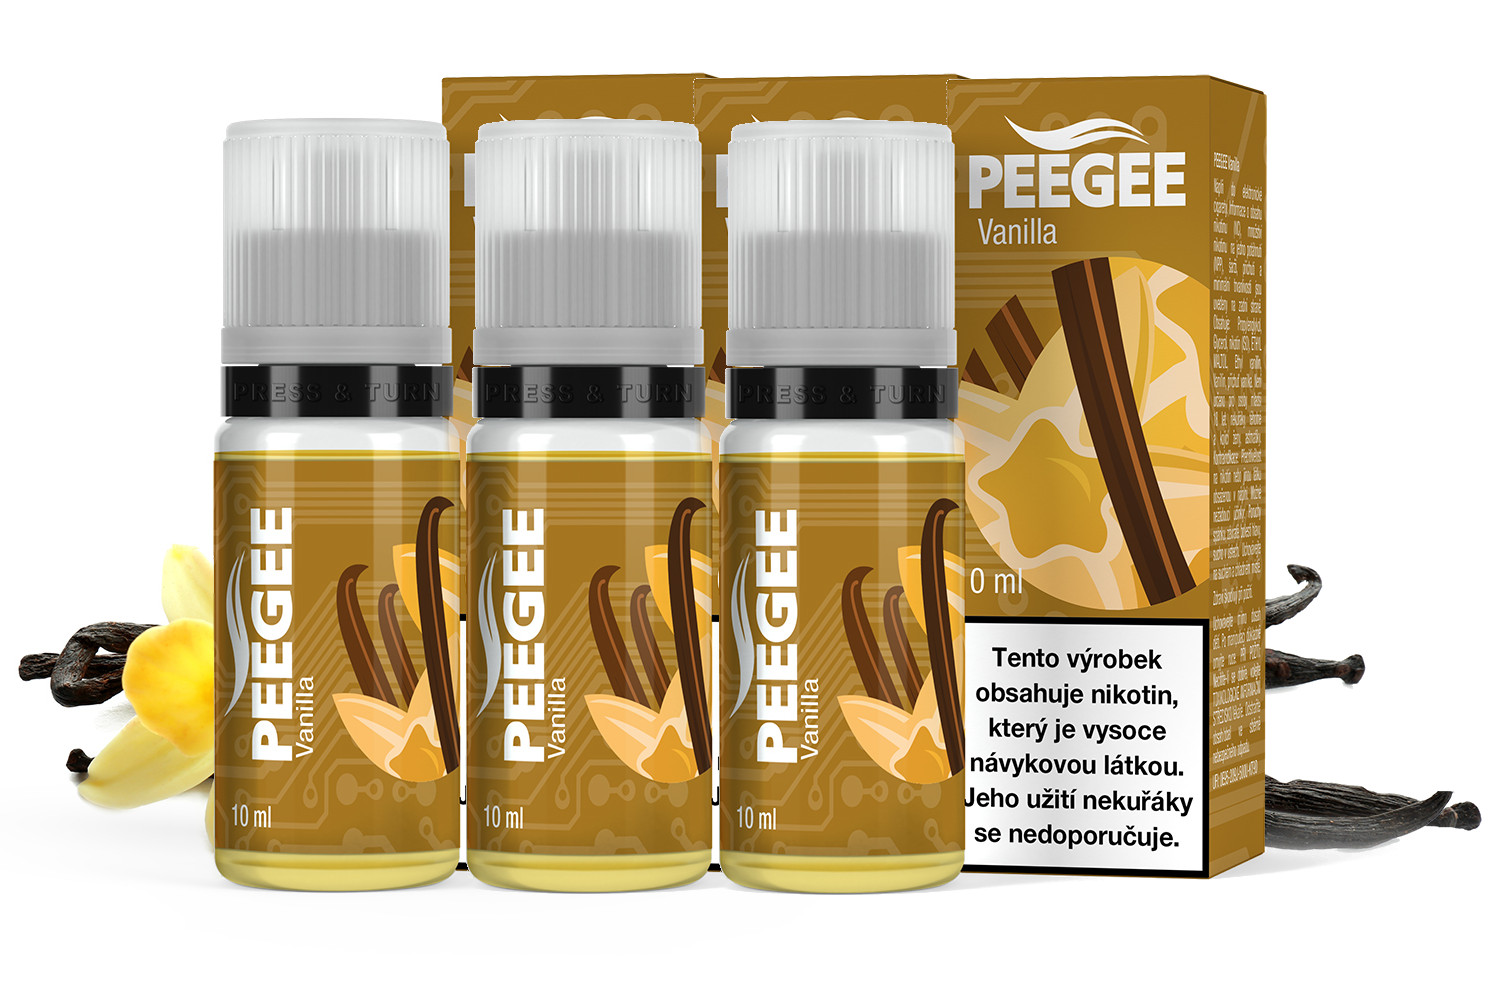 PEEGEE - Vanilka (Vanilla) 3x10ml Obsah nikotinu: 12mg